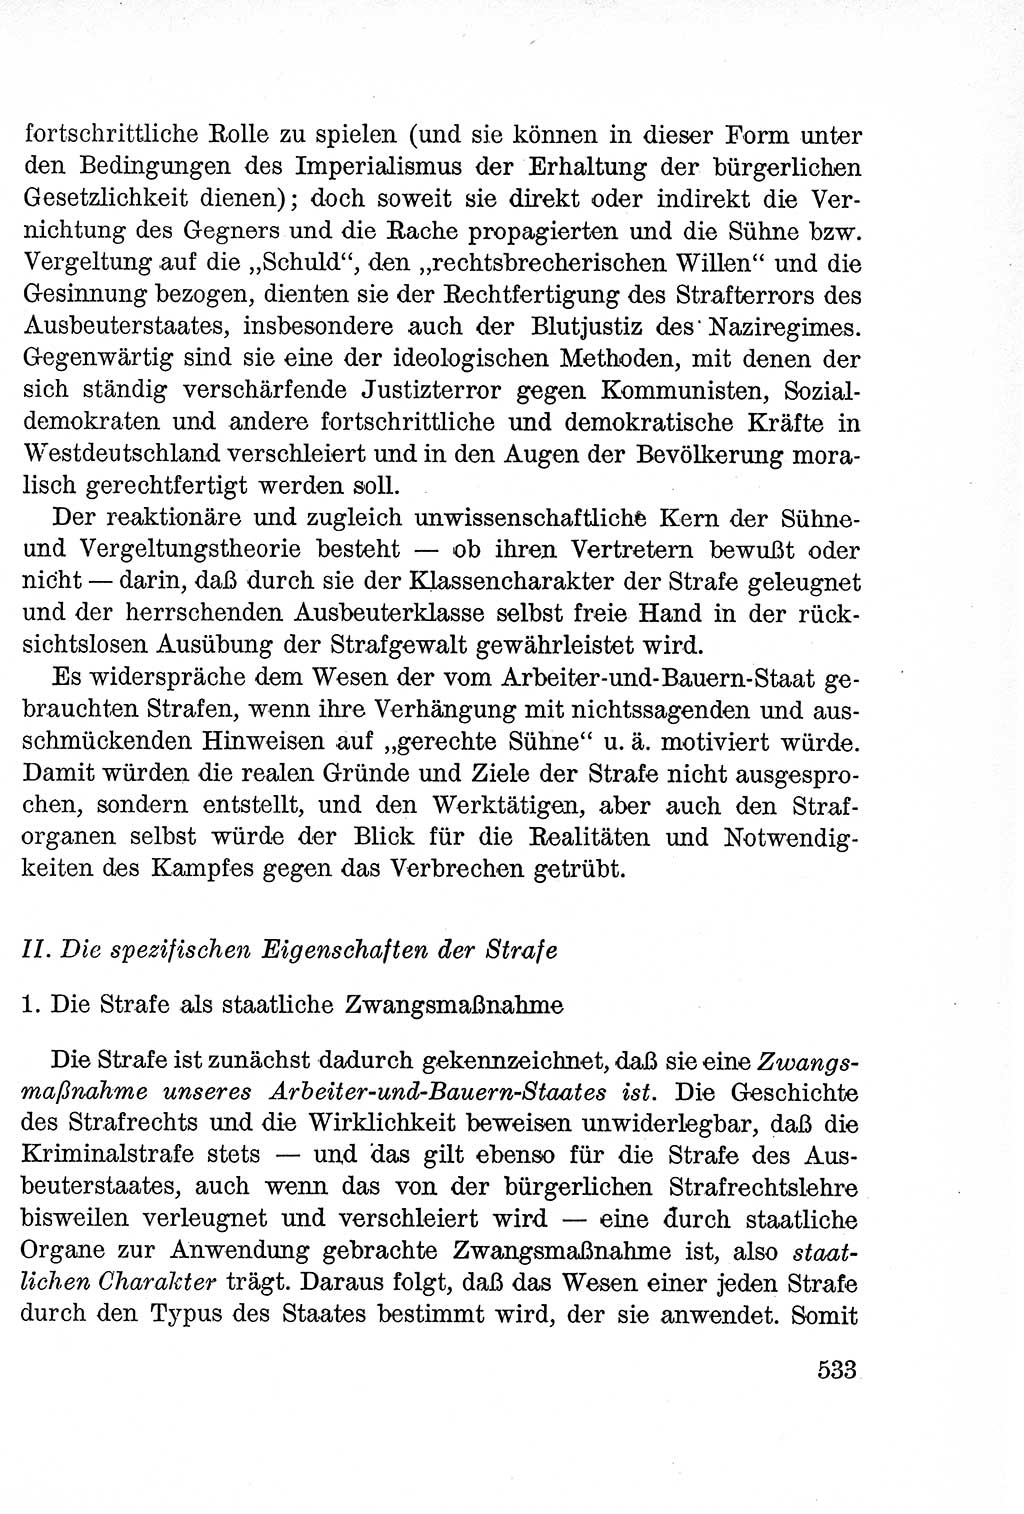 Lehrbuch des Strafrechts der Deutschen Demokratischen Republik (DDR), Allgemeiner Teil 1957, Seite 533 (Lb. Strafr. DDR AT 1957, S. 533)